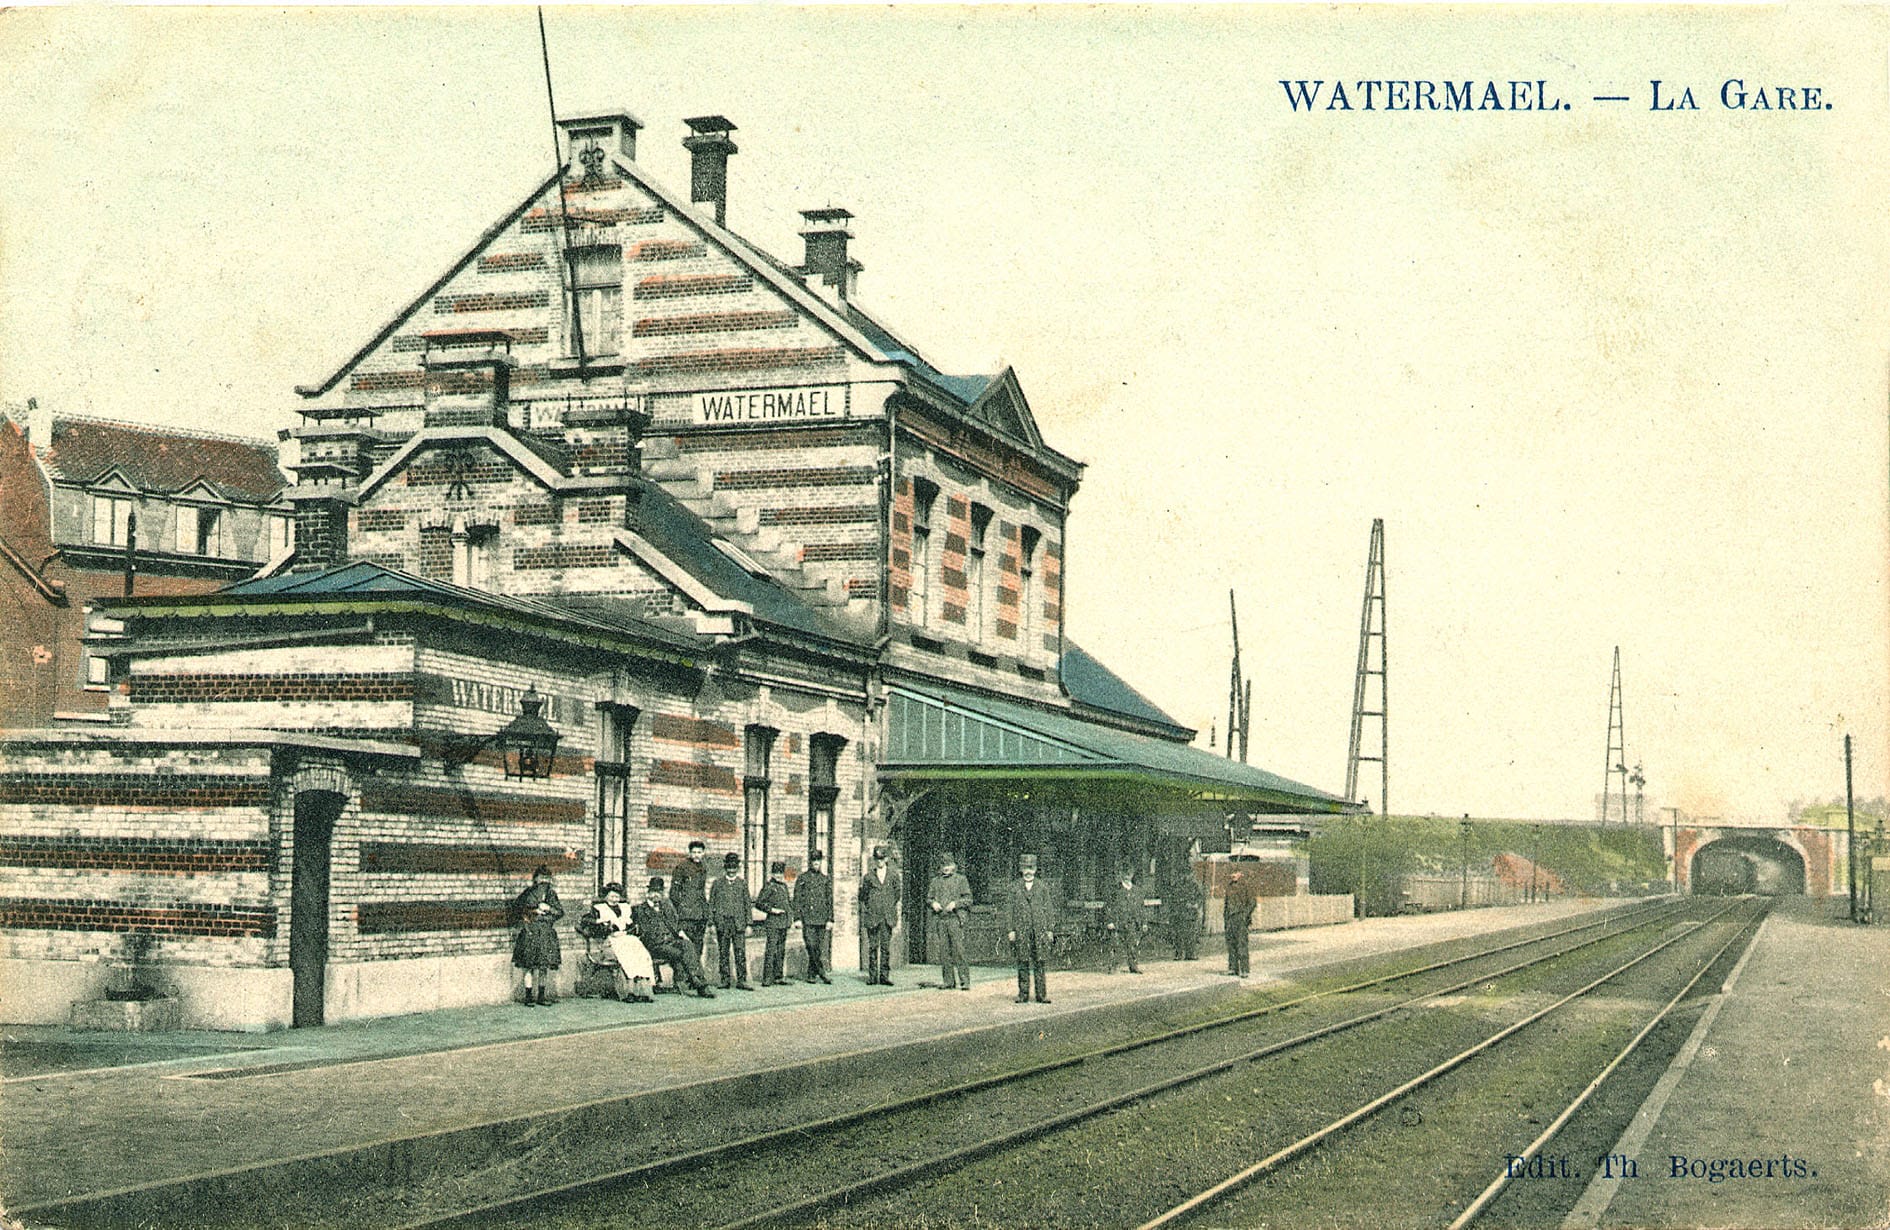 La gare de Watermael, côté quais - Carte postale Ed. Th. Bogaerts, vers 1910.